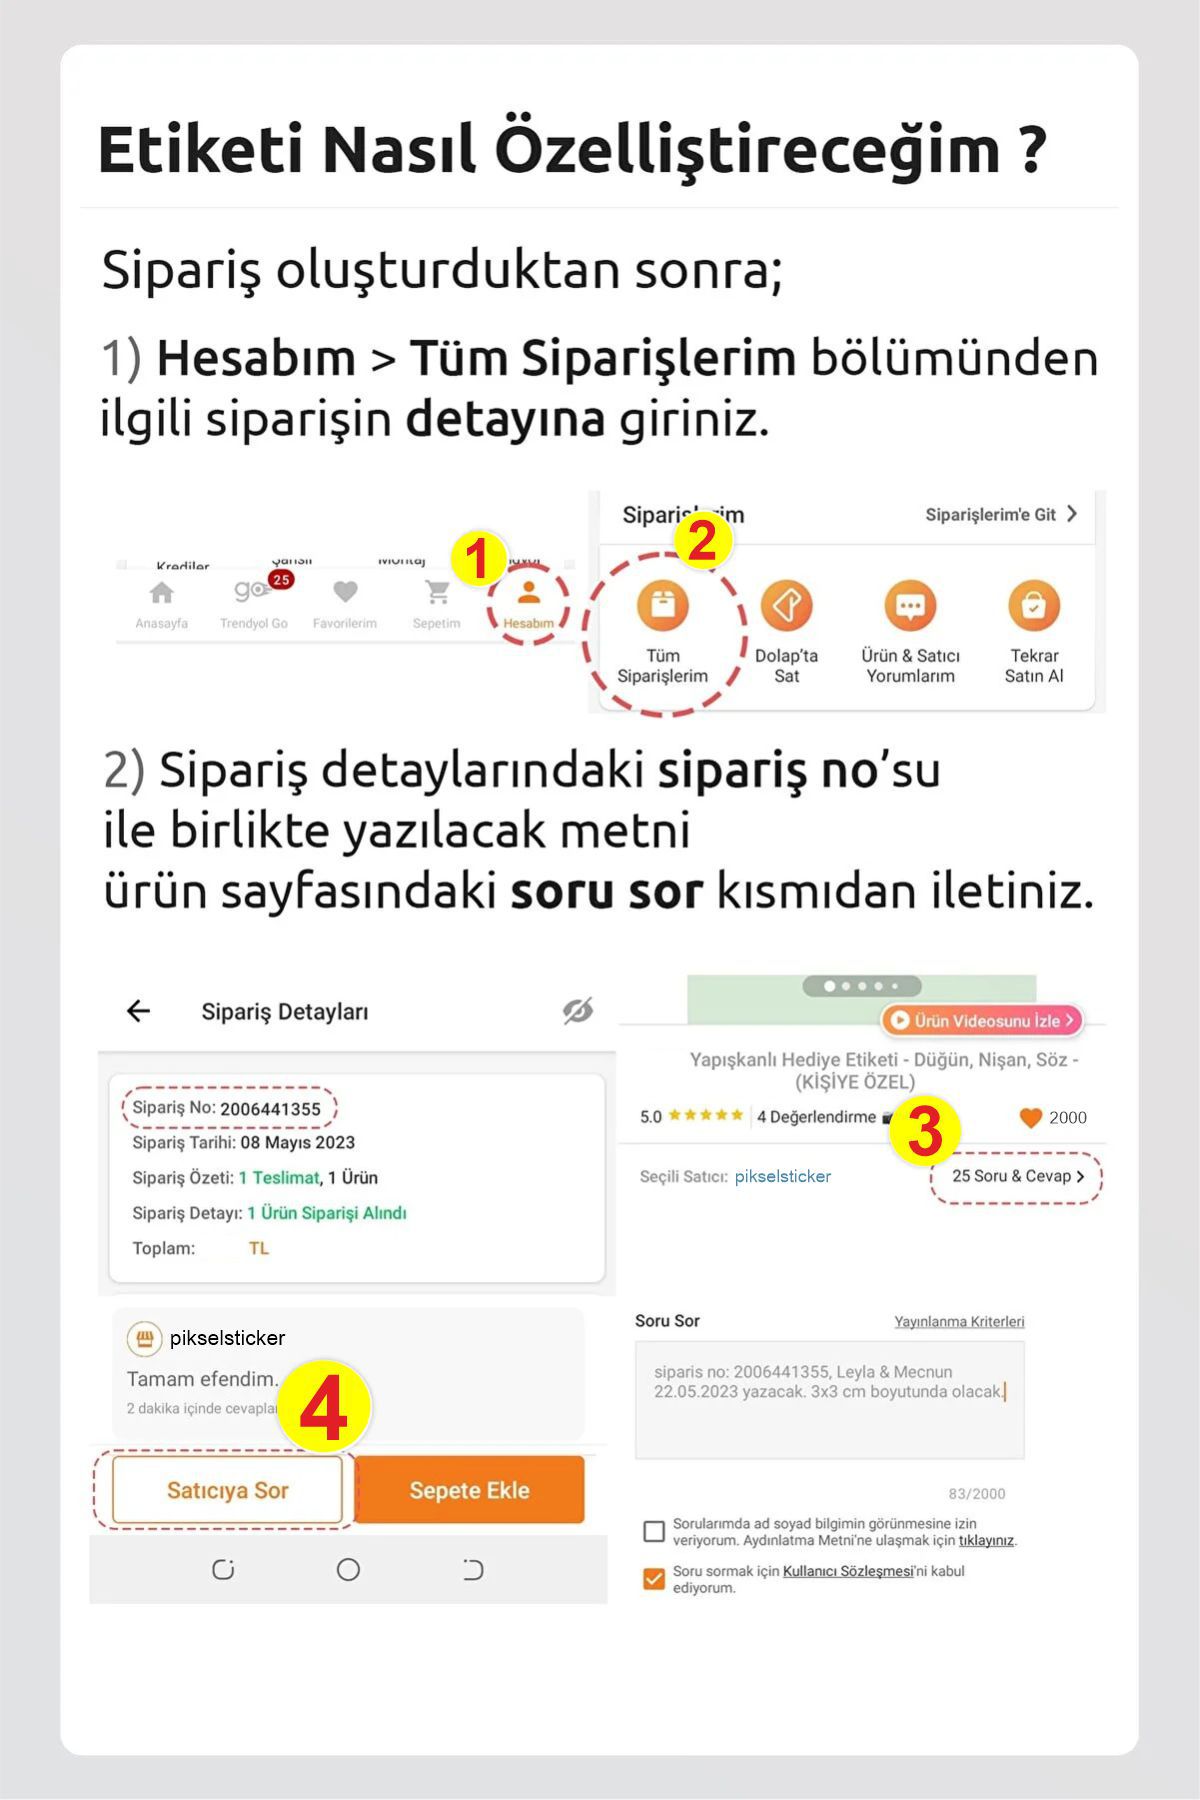 Beşiktaş Okul Etiketi Kalem Defter Etiketi Özel İsim Yazılabilen Etiket 190 Adet